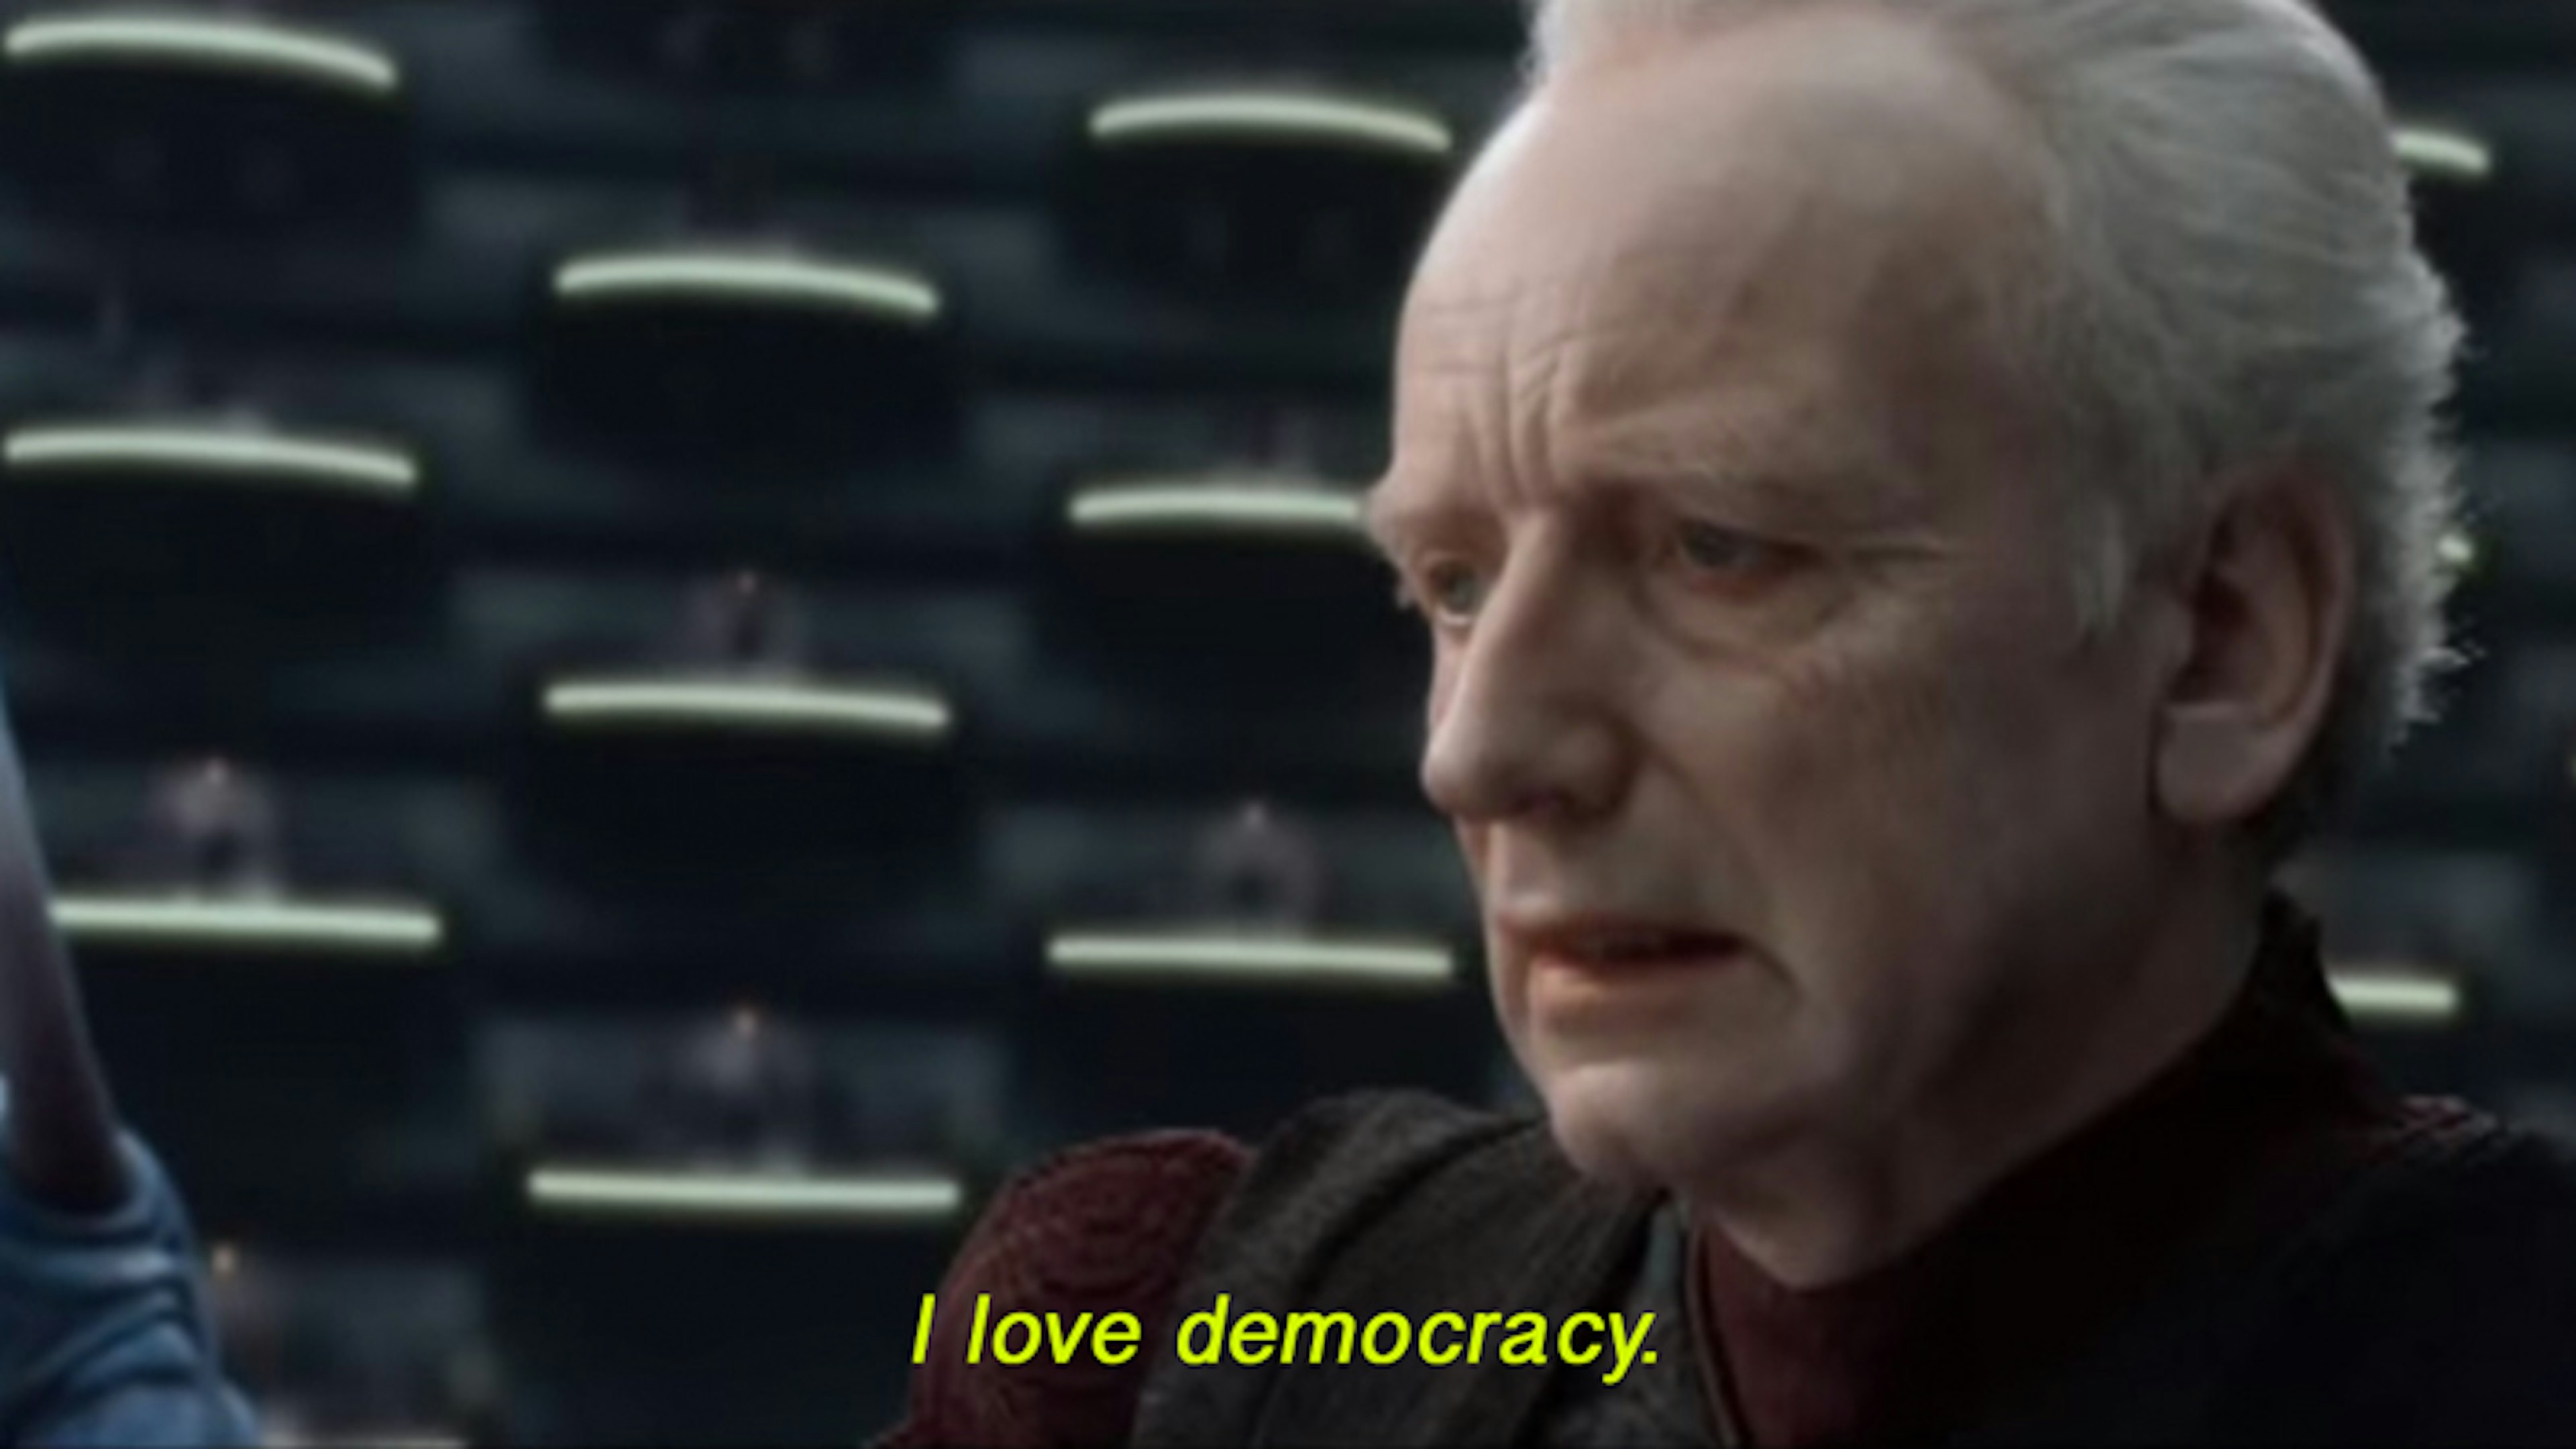 Сенатор на картинке говорит, что любит демократию